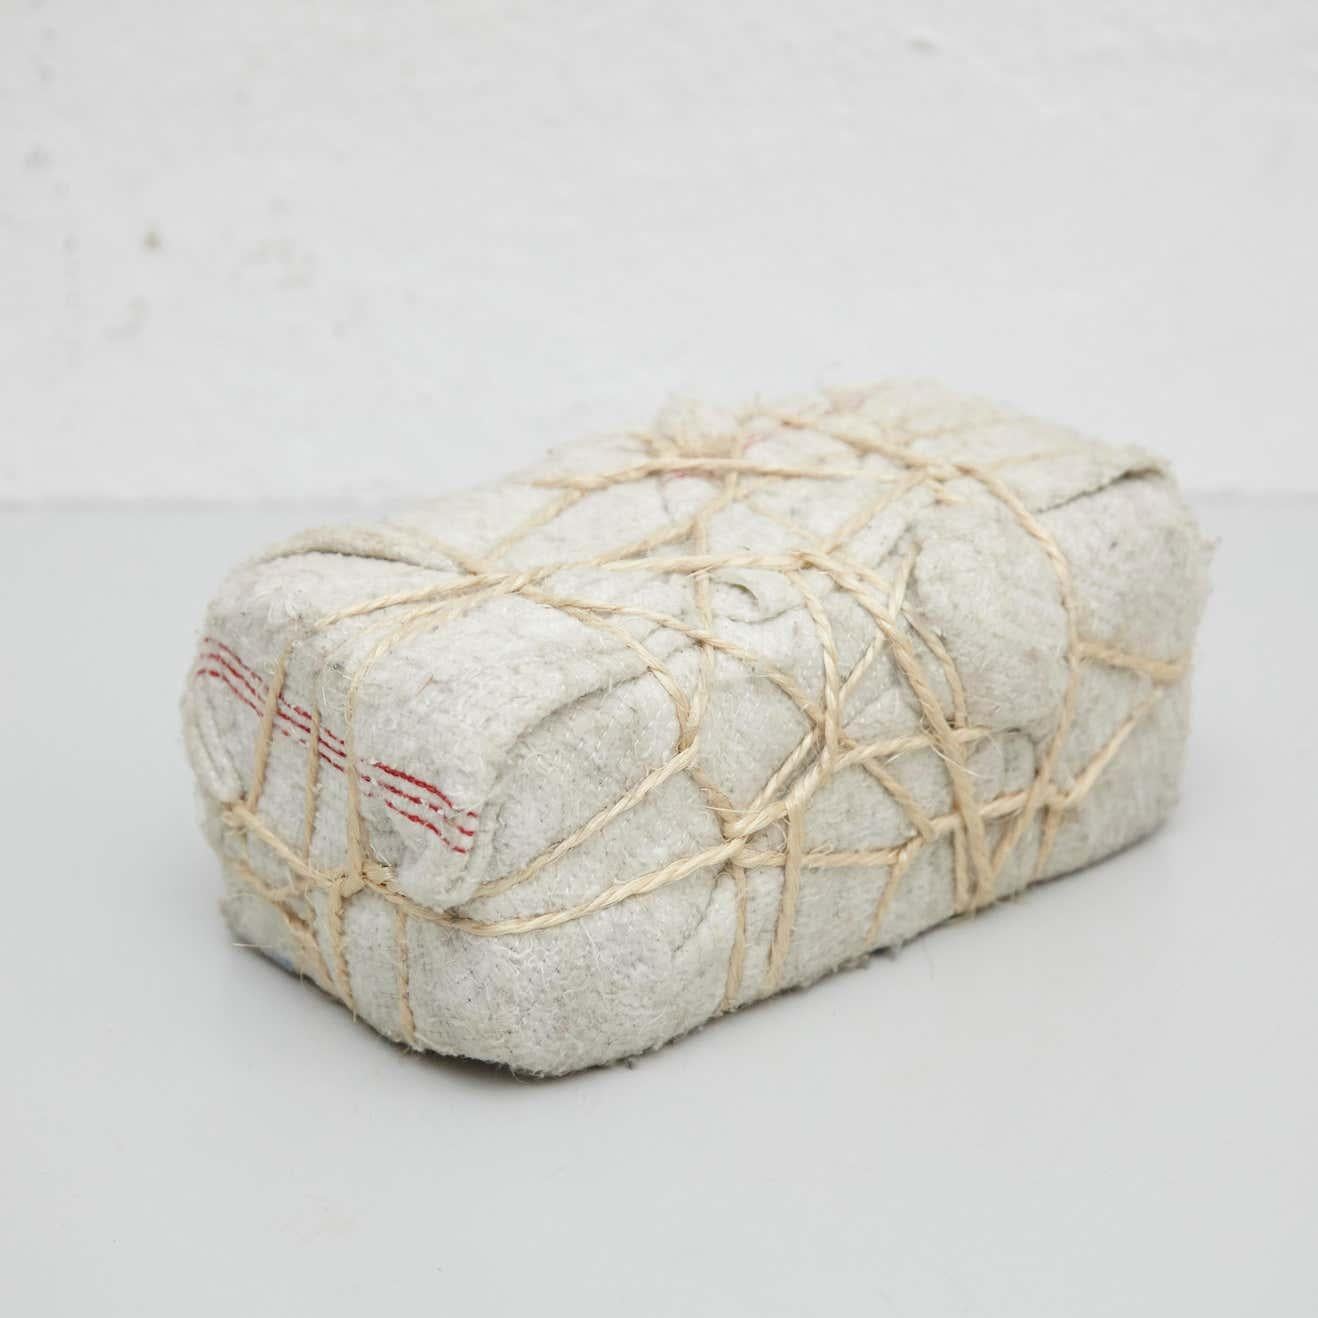 Adrian zeitgenössische abstrakte Skulptur, 2017

Eingewickelter Stein.